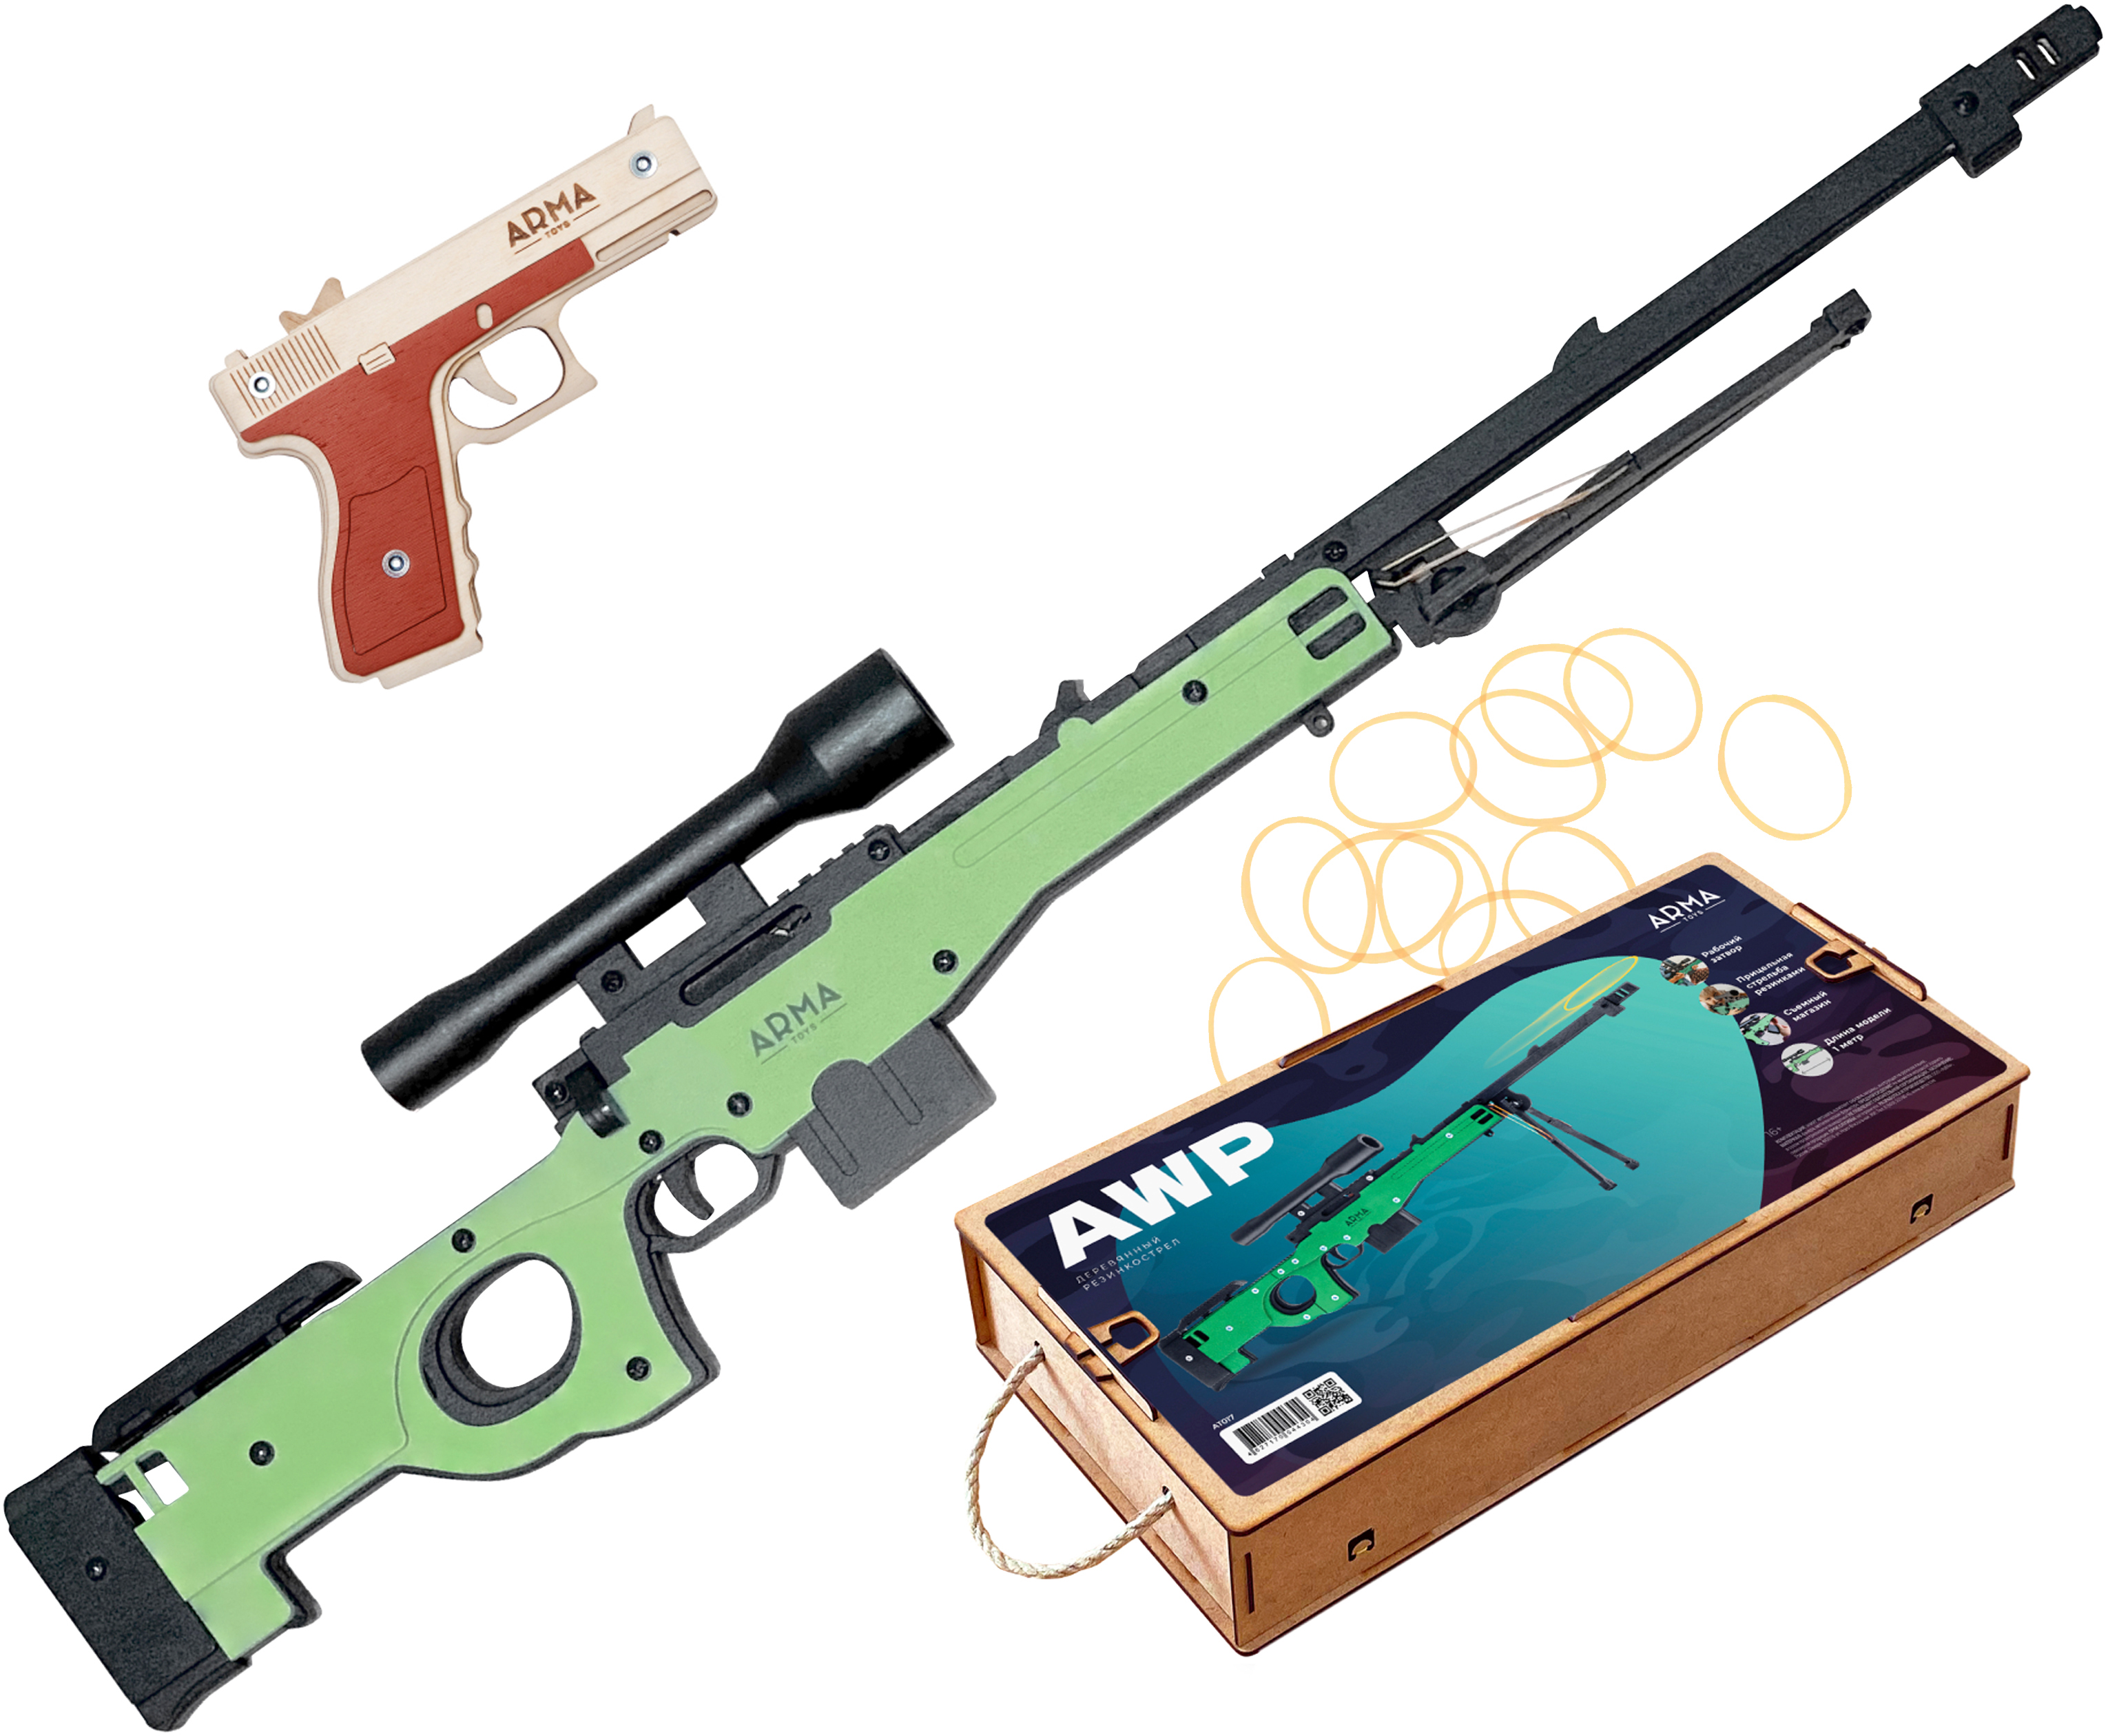 Набор игрушечных резинкострелов Arma toys Спецназ полиции винтовка AWP, пистолет Глок набор игрушечных резинкострелов arma toys спецназ фбр 2 винтовка m4 пистолет глок at510